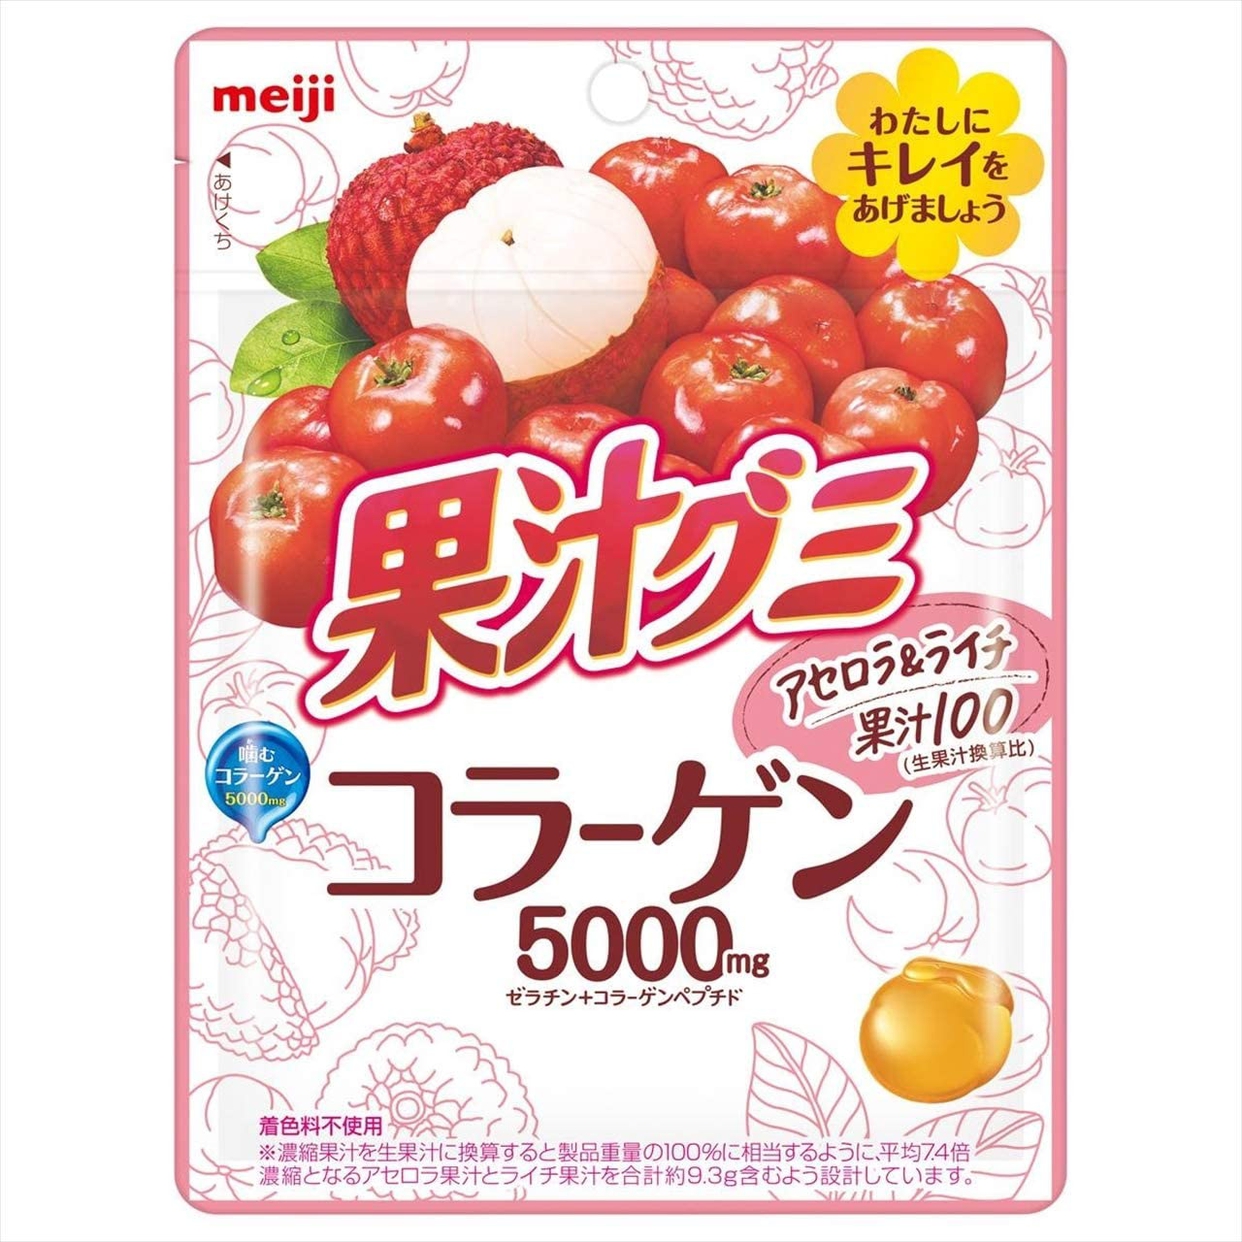 グミおすすめ商品：明治(meiji) 果汁グミ コラーゲン